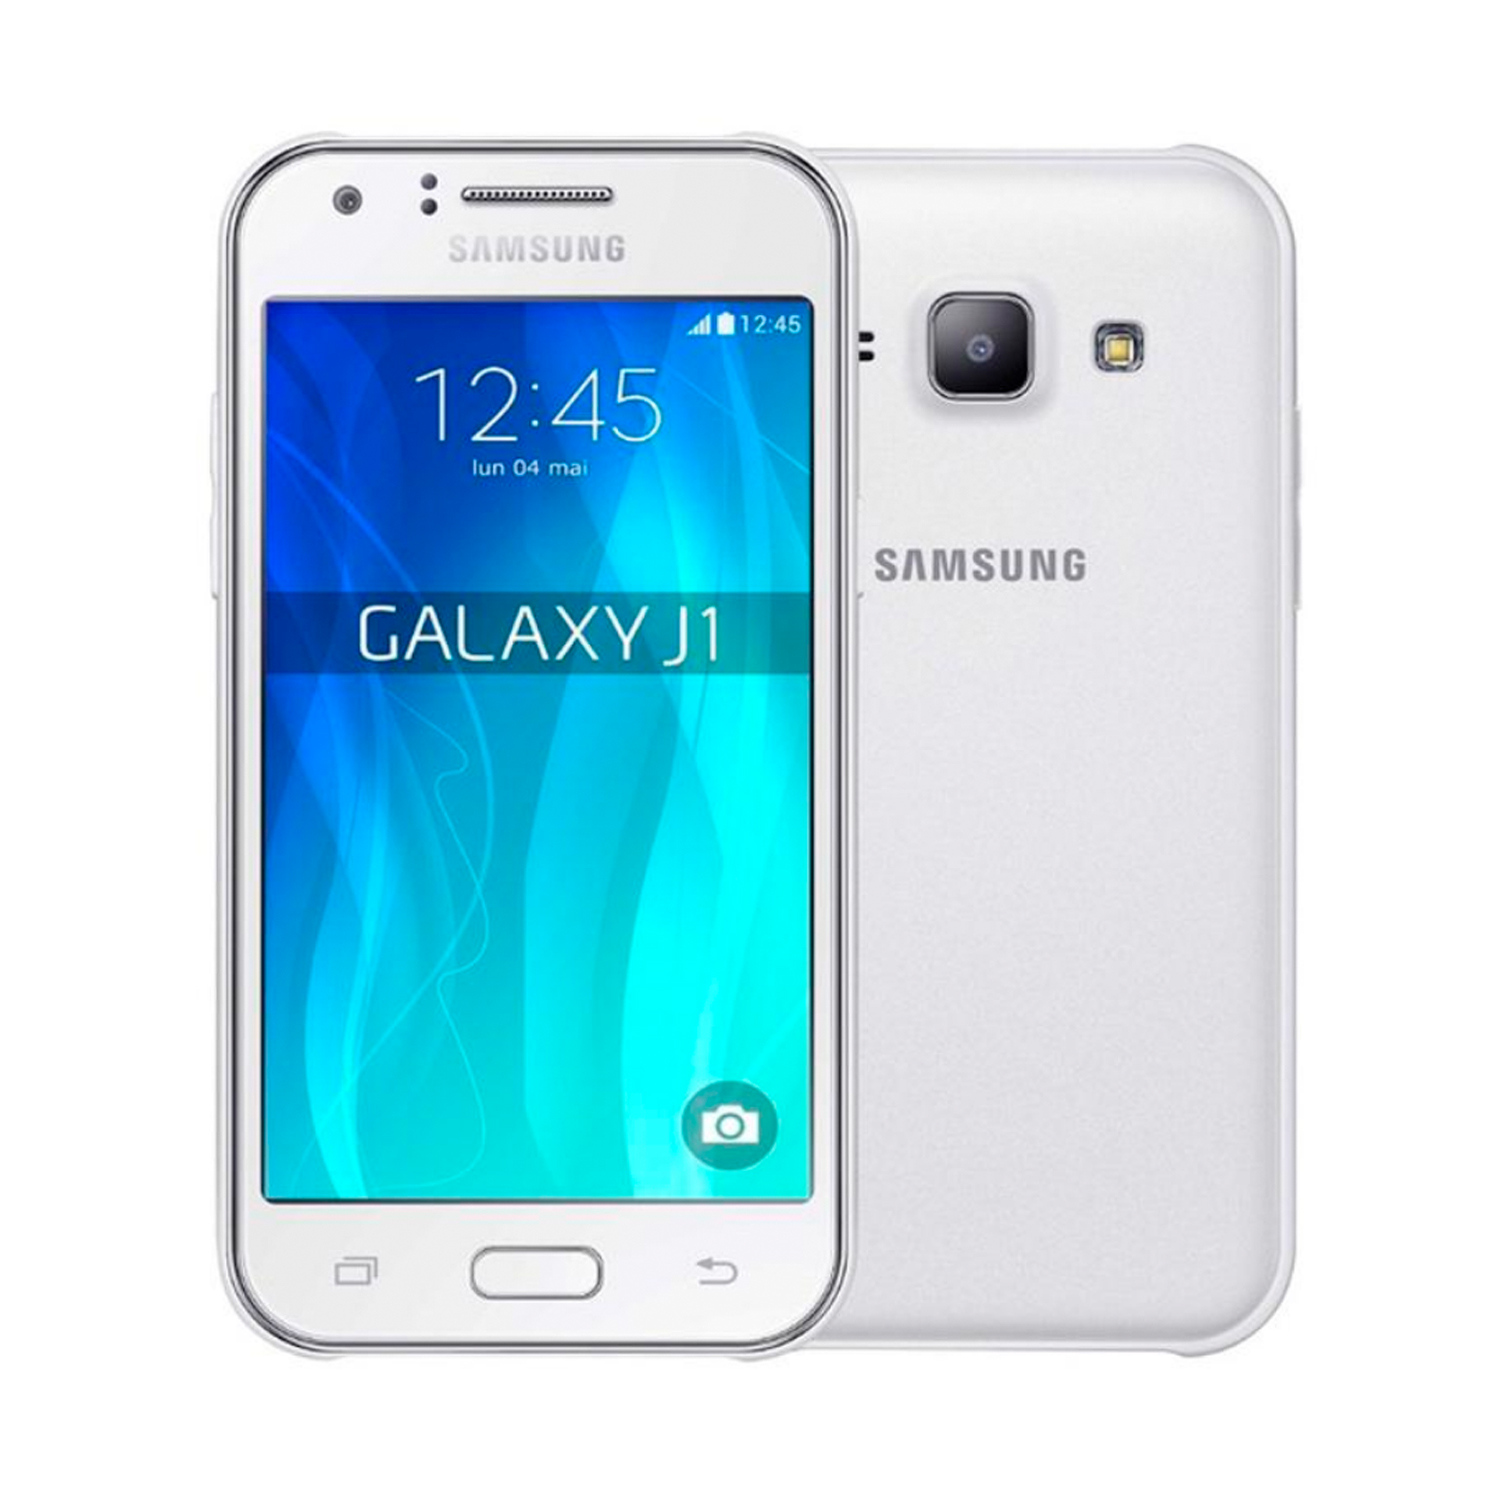 Samsung Galaxy j1 2015